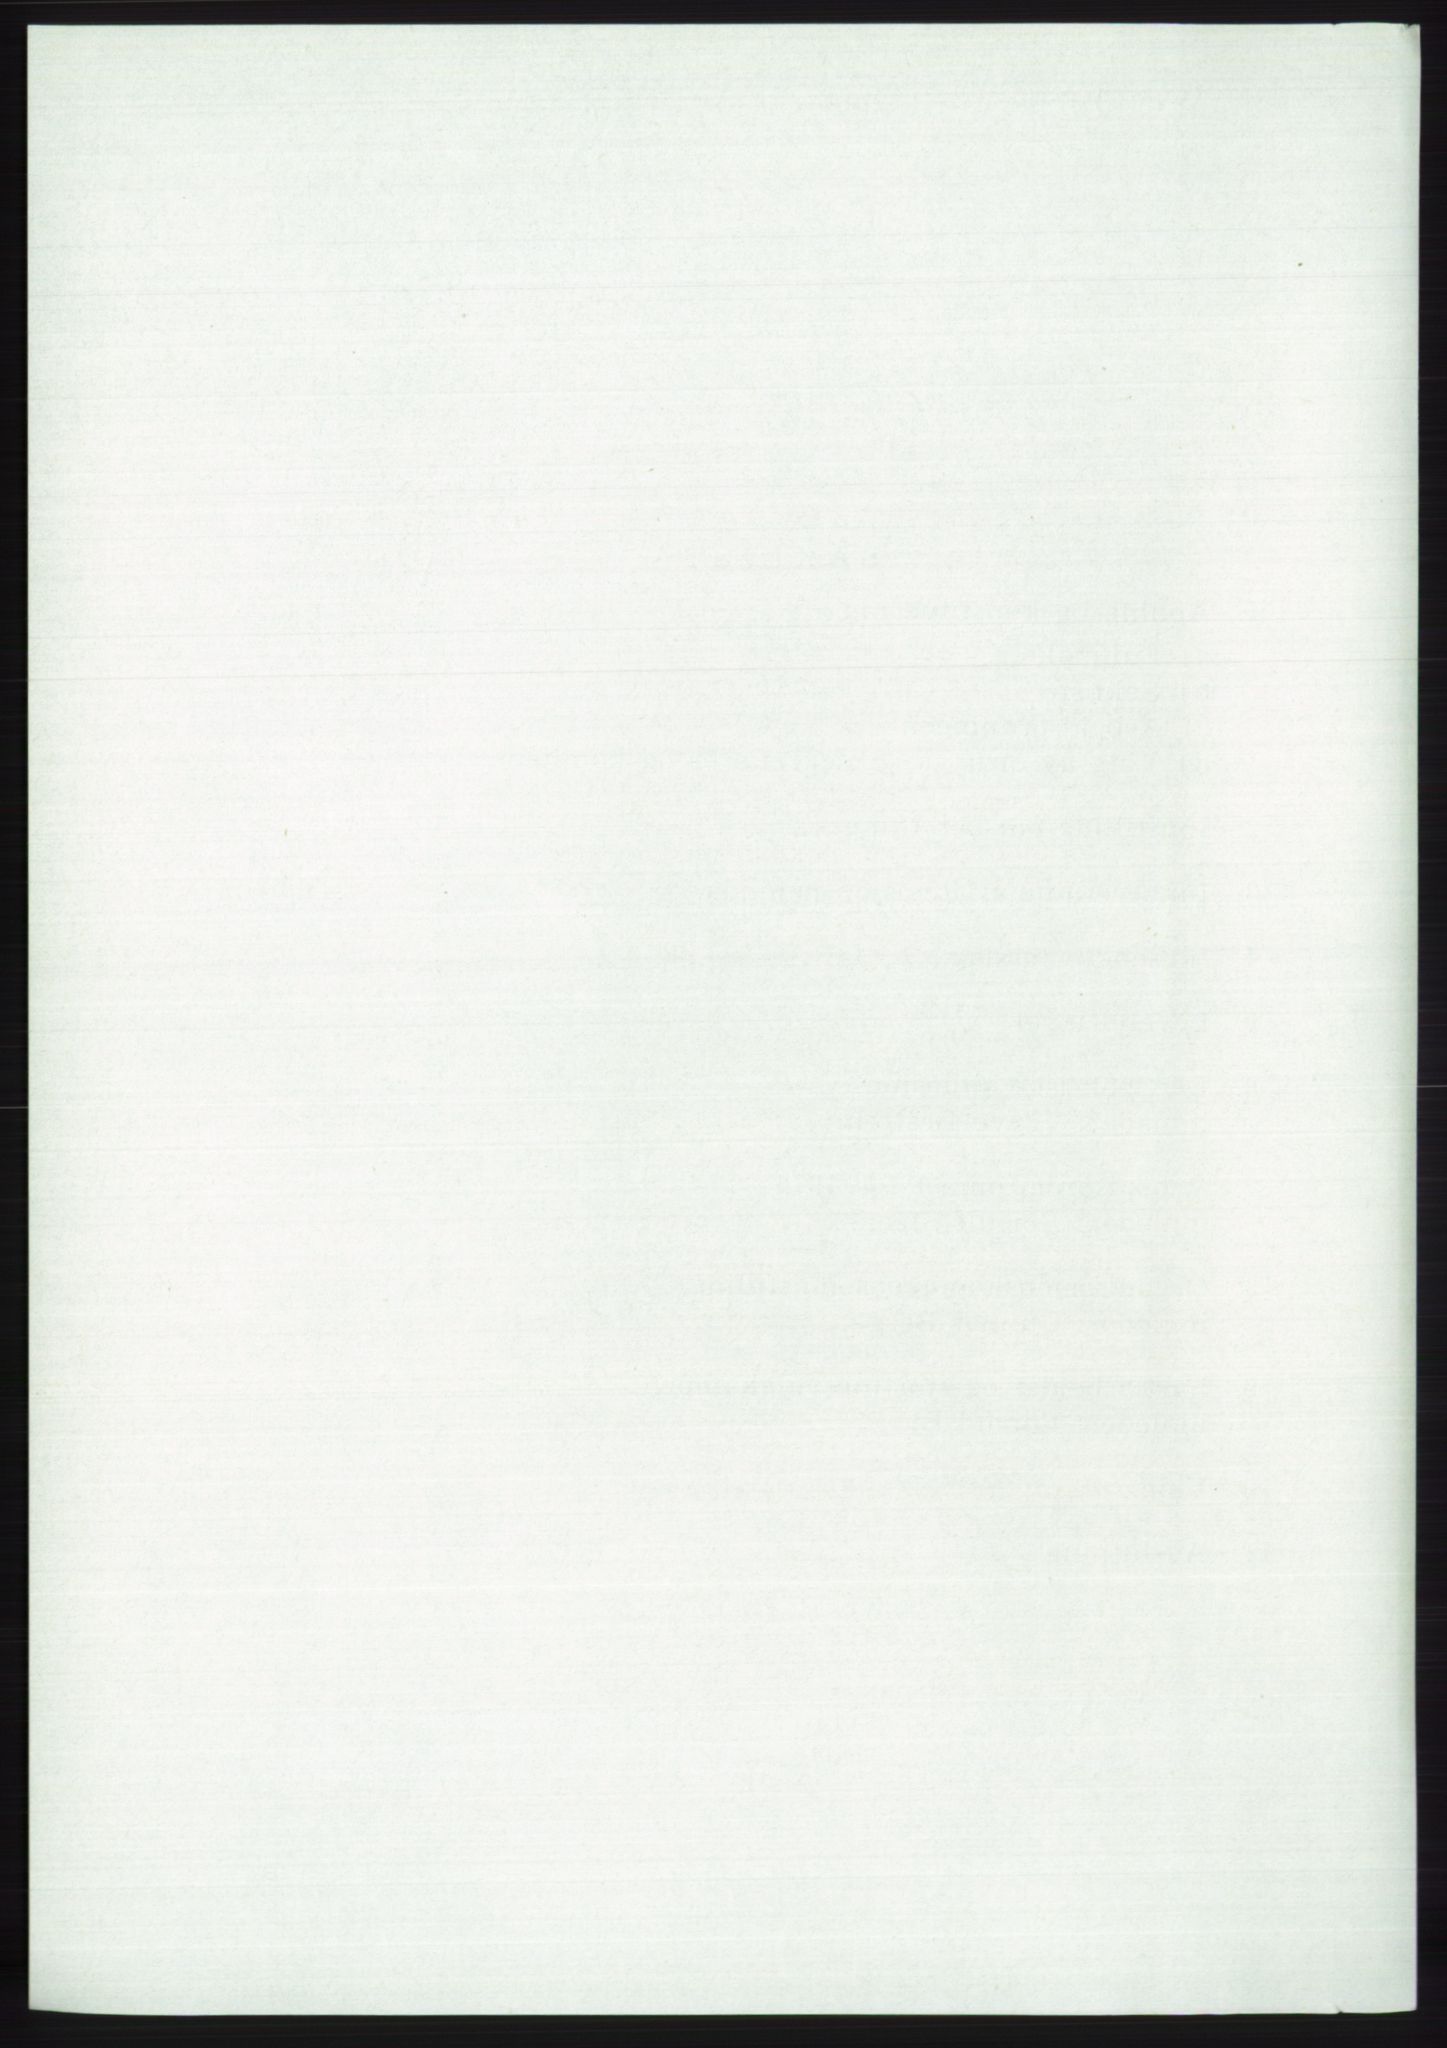 Det norske Arbeiderparti - publikasjoner, AAB/-/-/-: Protokoll over forhandlingene på det 45. ordinære landsmøte 27.-30. mai 1973 i Oslo, 1973